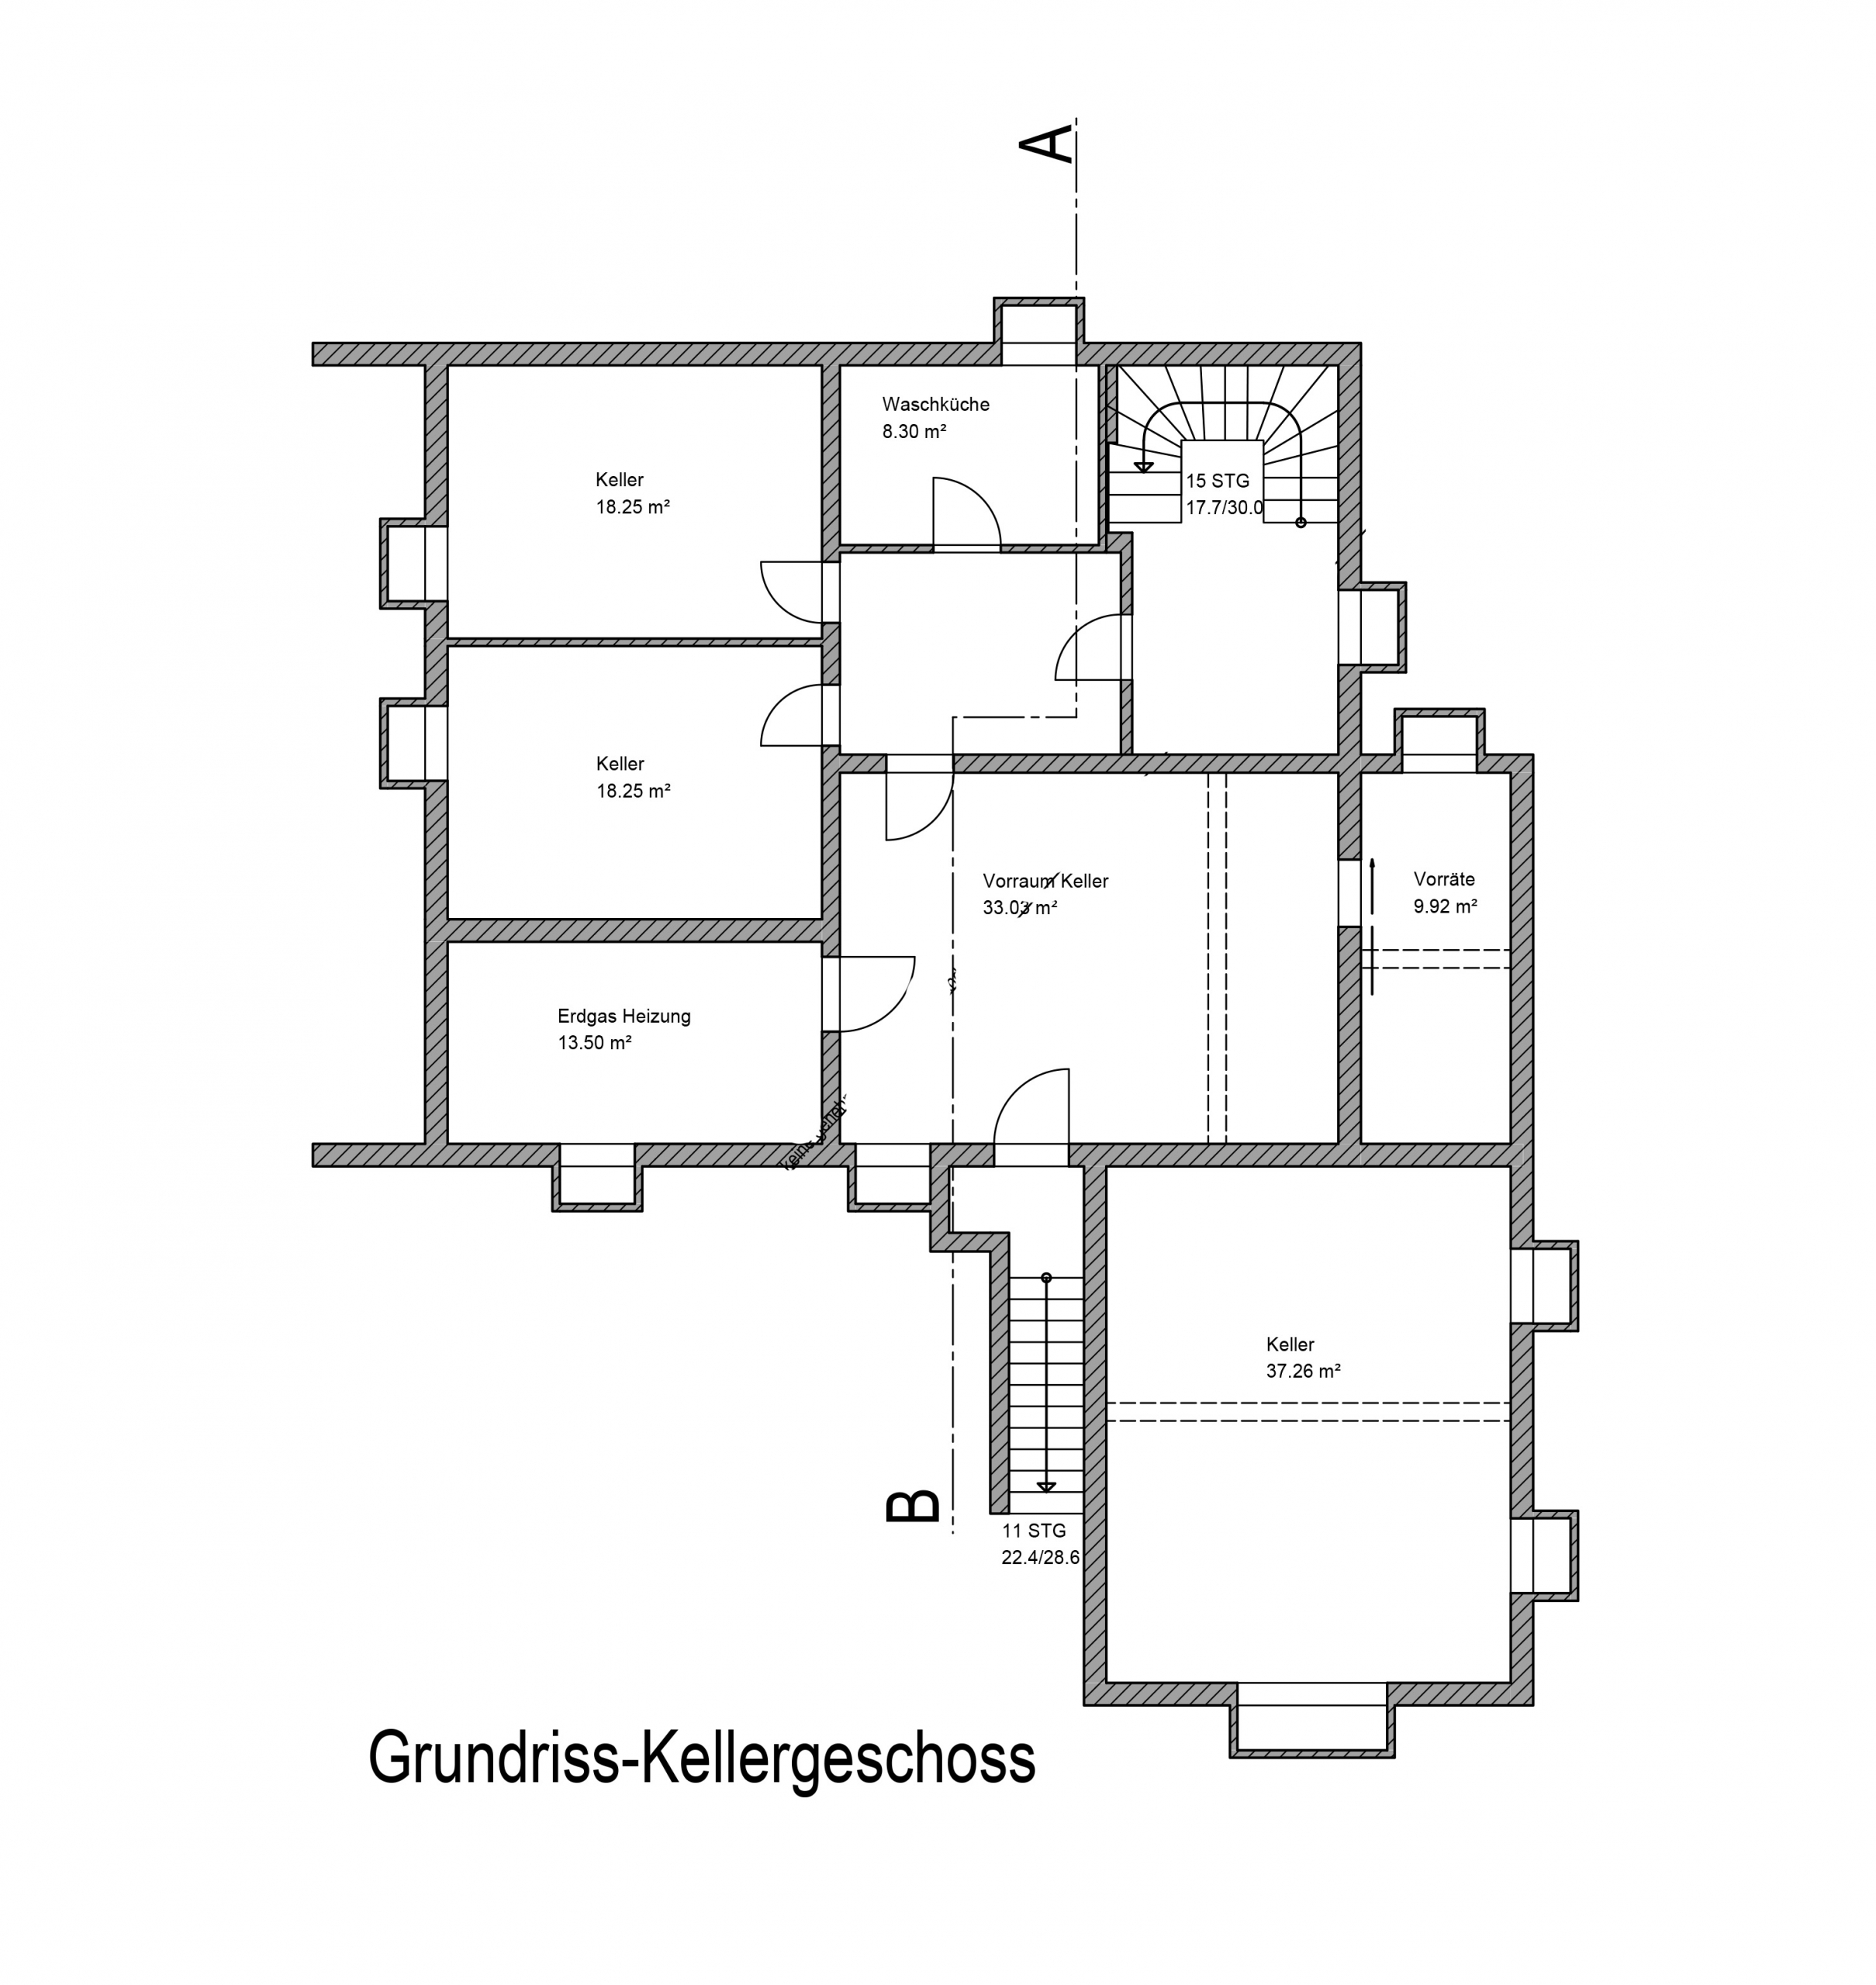 Großes, befristet vermietetes 3-Familienhaus in Bestlage von Weilheim - Grundriss KG